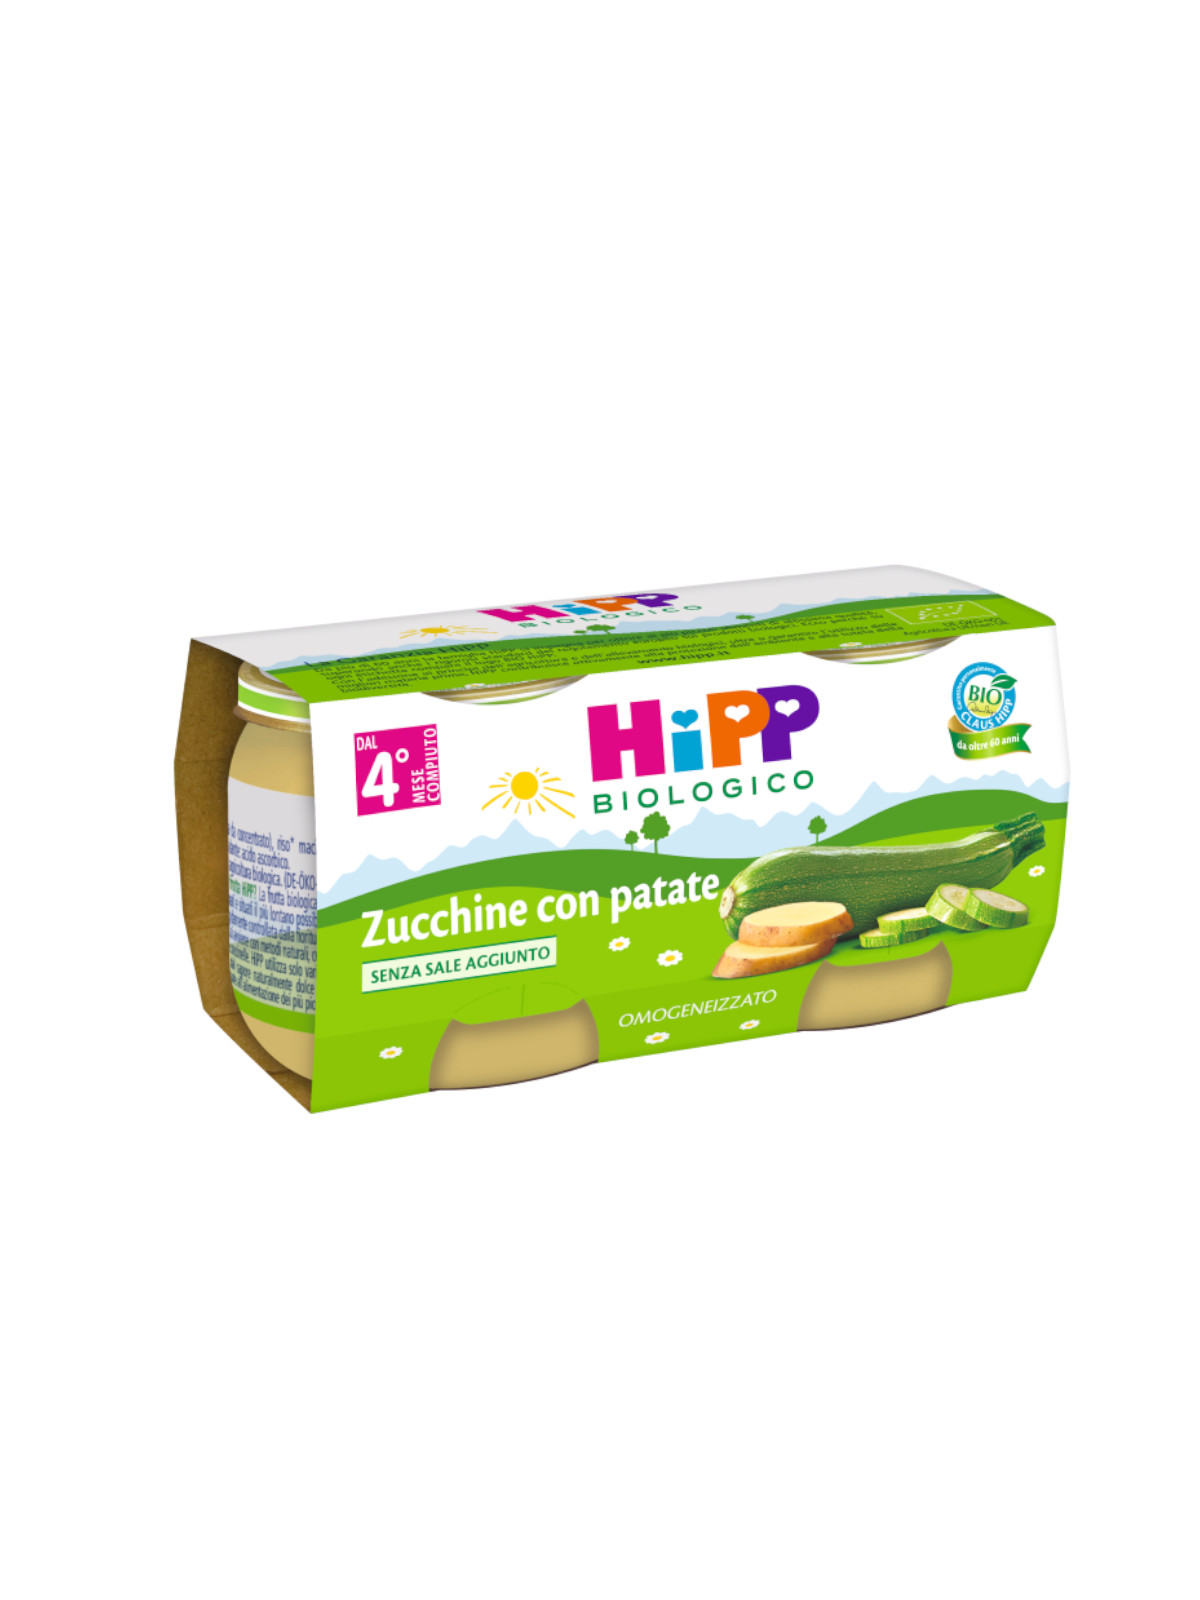 Hipp - omogeneizzato zucchine con patate 2x80g - Hipp